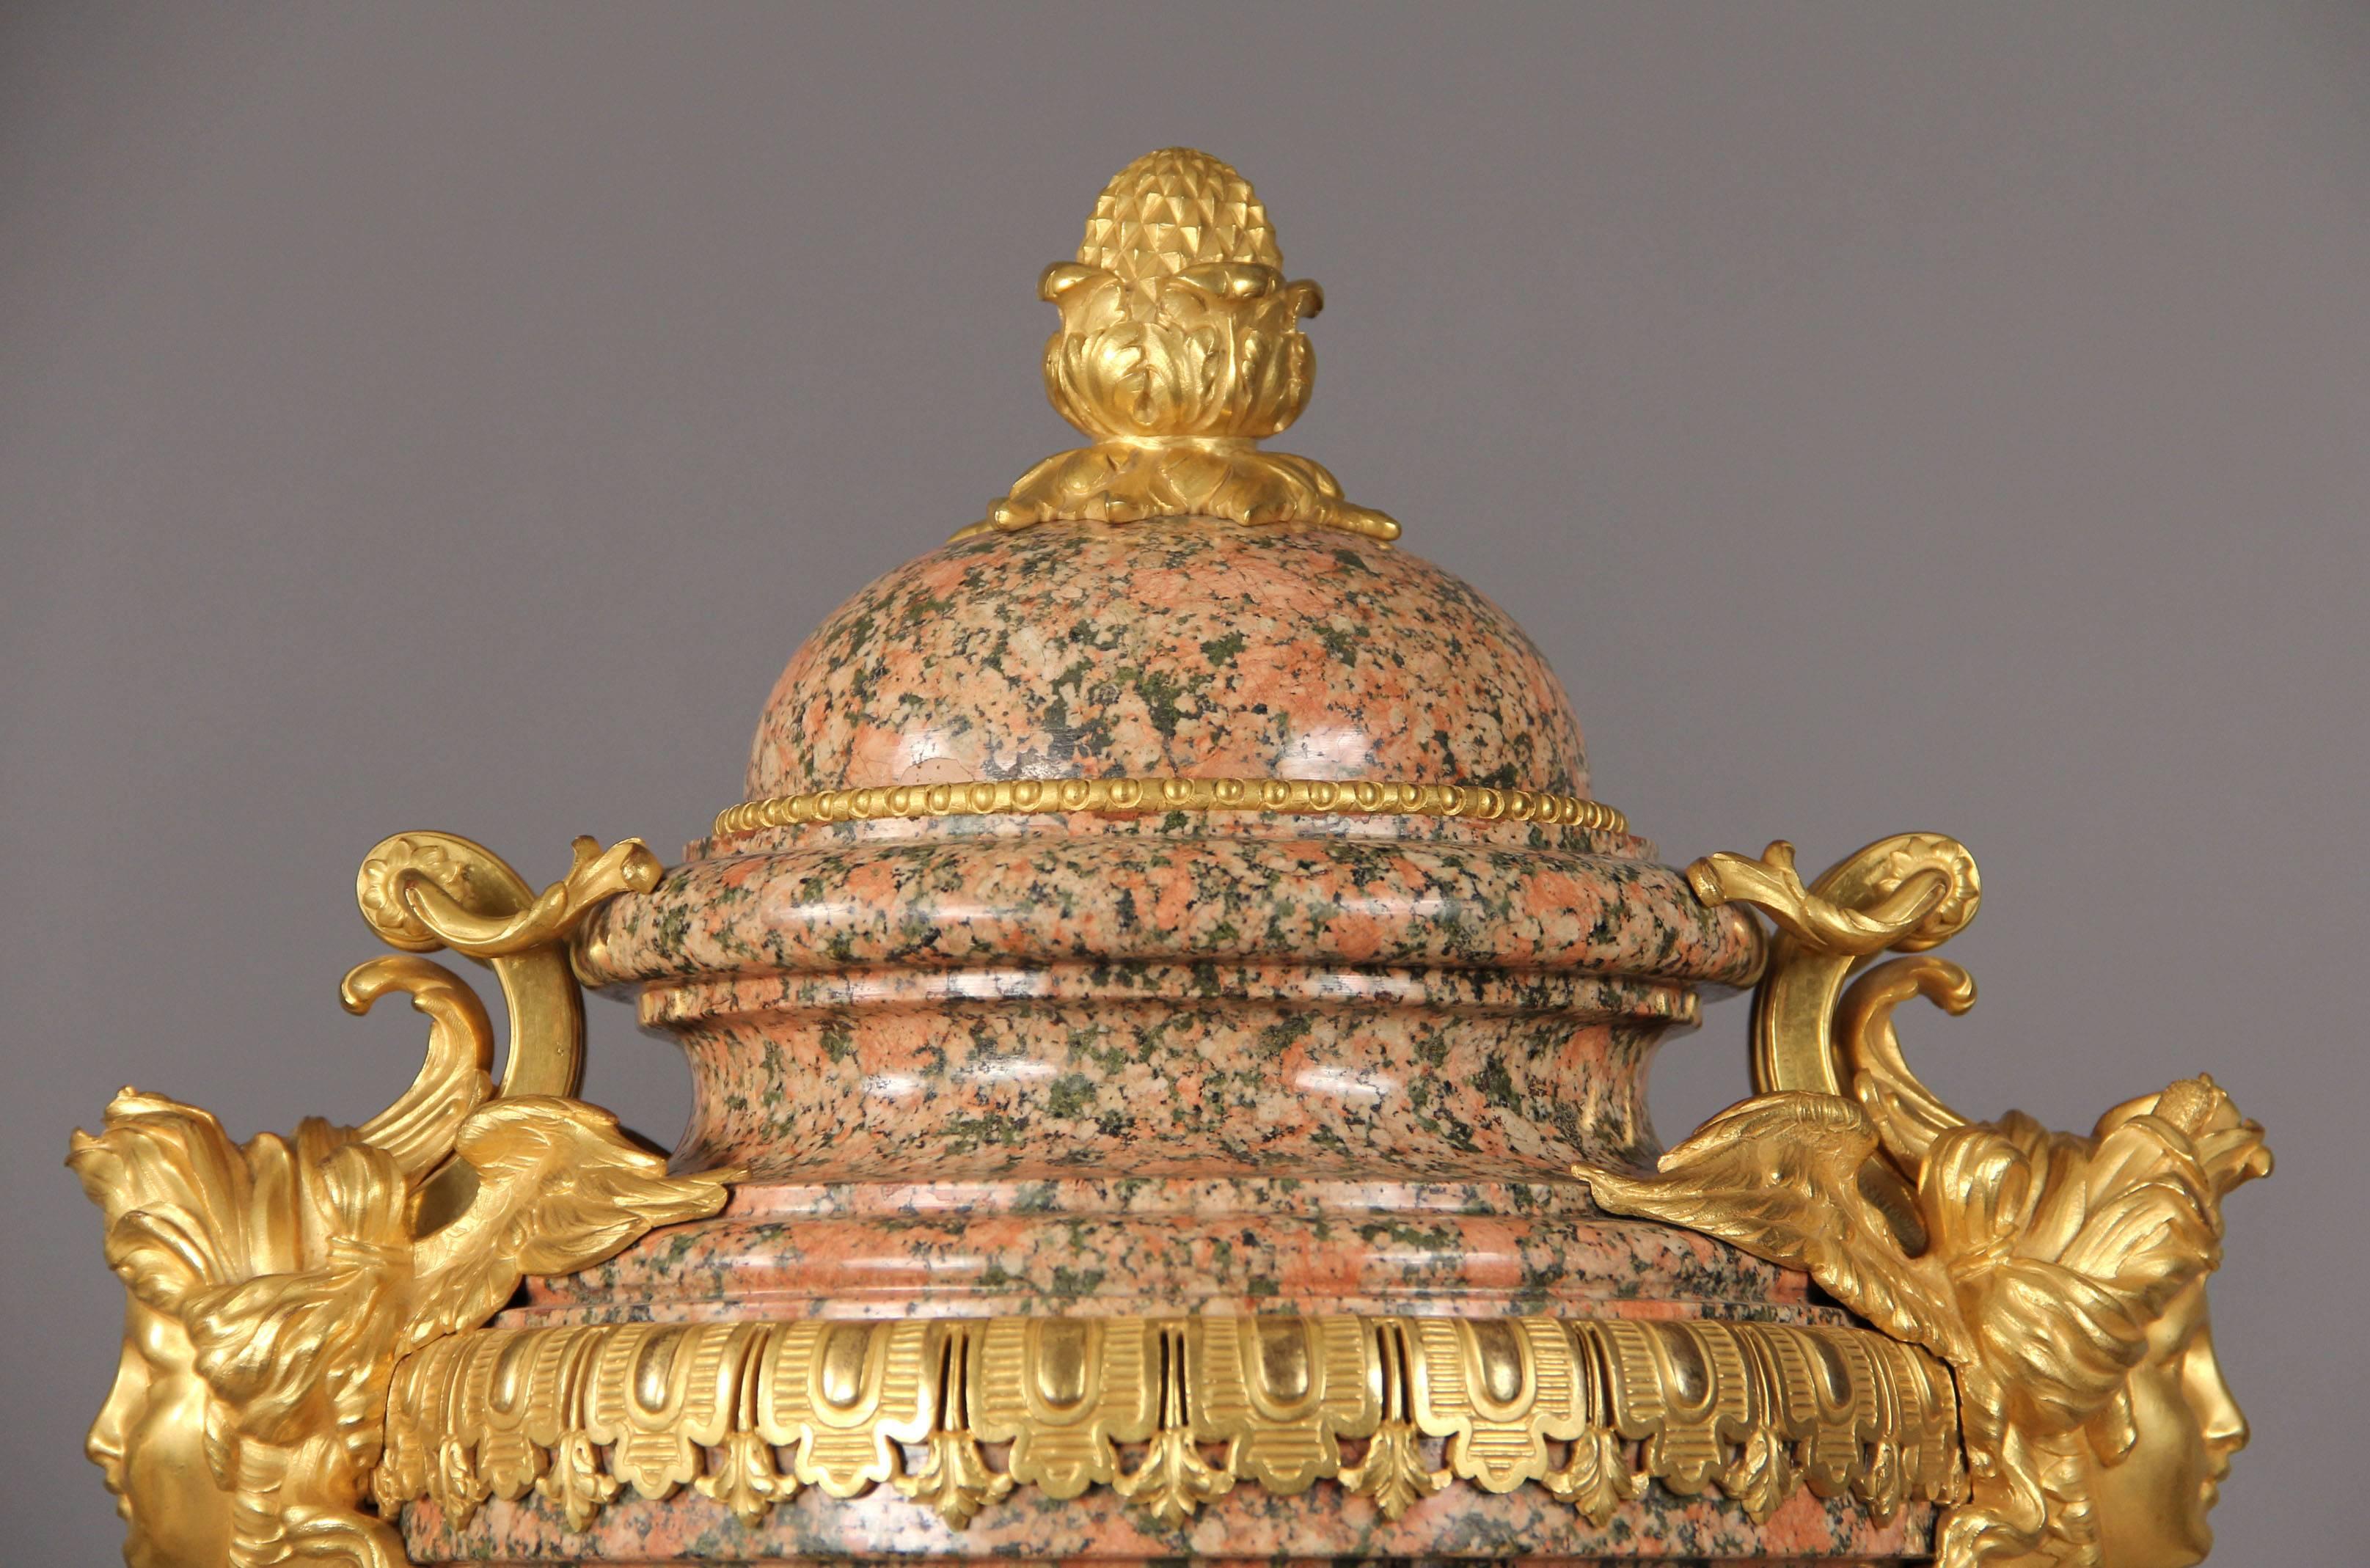 Une paire rare d'urnes françaises en granit rose montées en bronze, datant de la fin du XIXe siècle et du début du XXe siècle.

Chaque couvercle bombé est orné d'une pomme de pin, chaque côté d'un masque féminin ailé, sur des supports à pieds de